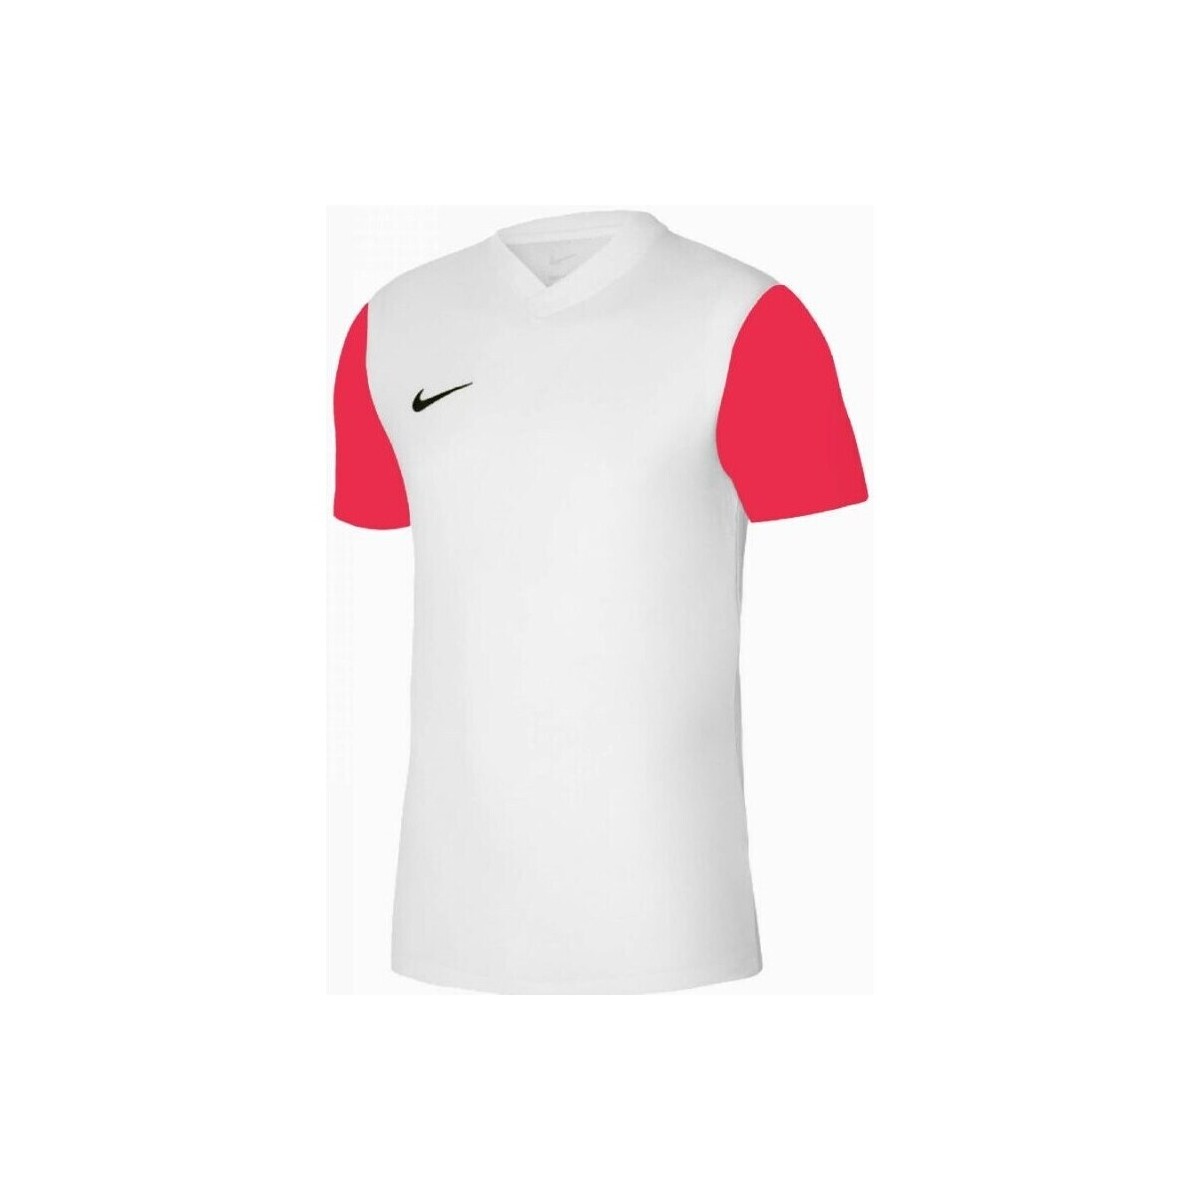 Vêtements Homme T-shirts manches courtes Nike Tiempo Premier II Jsy Blanc, Rouge